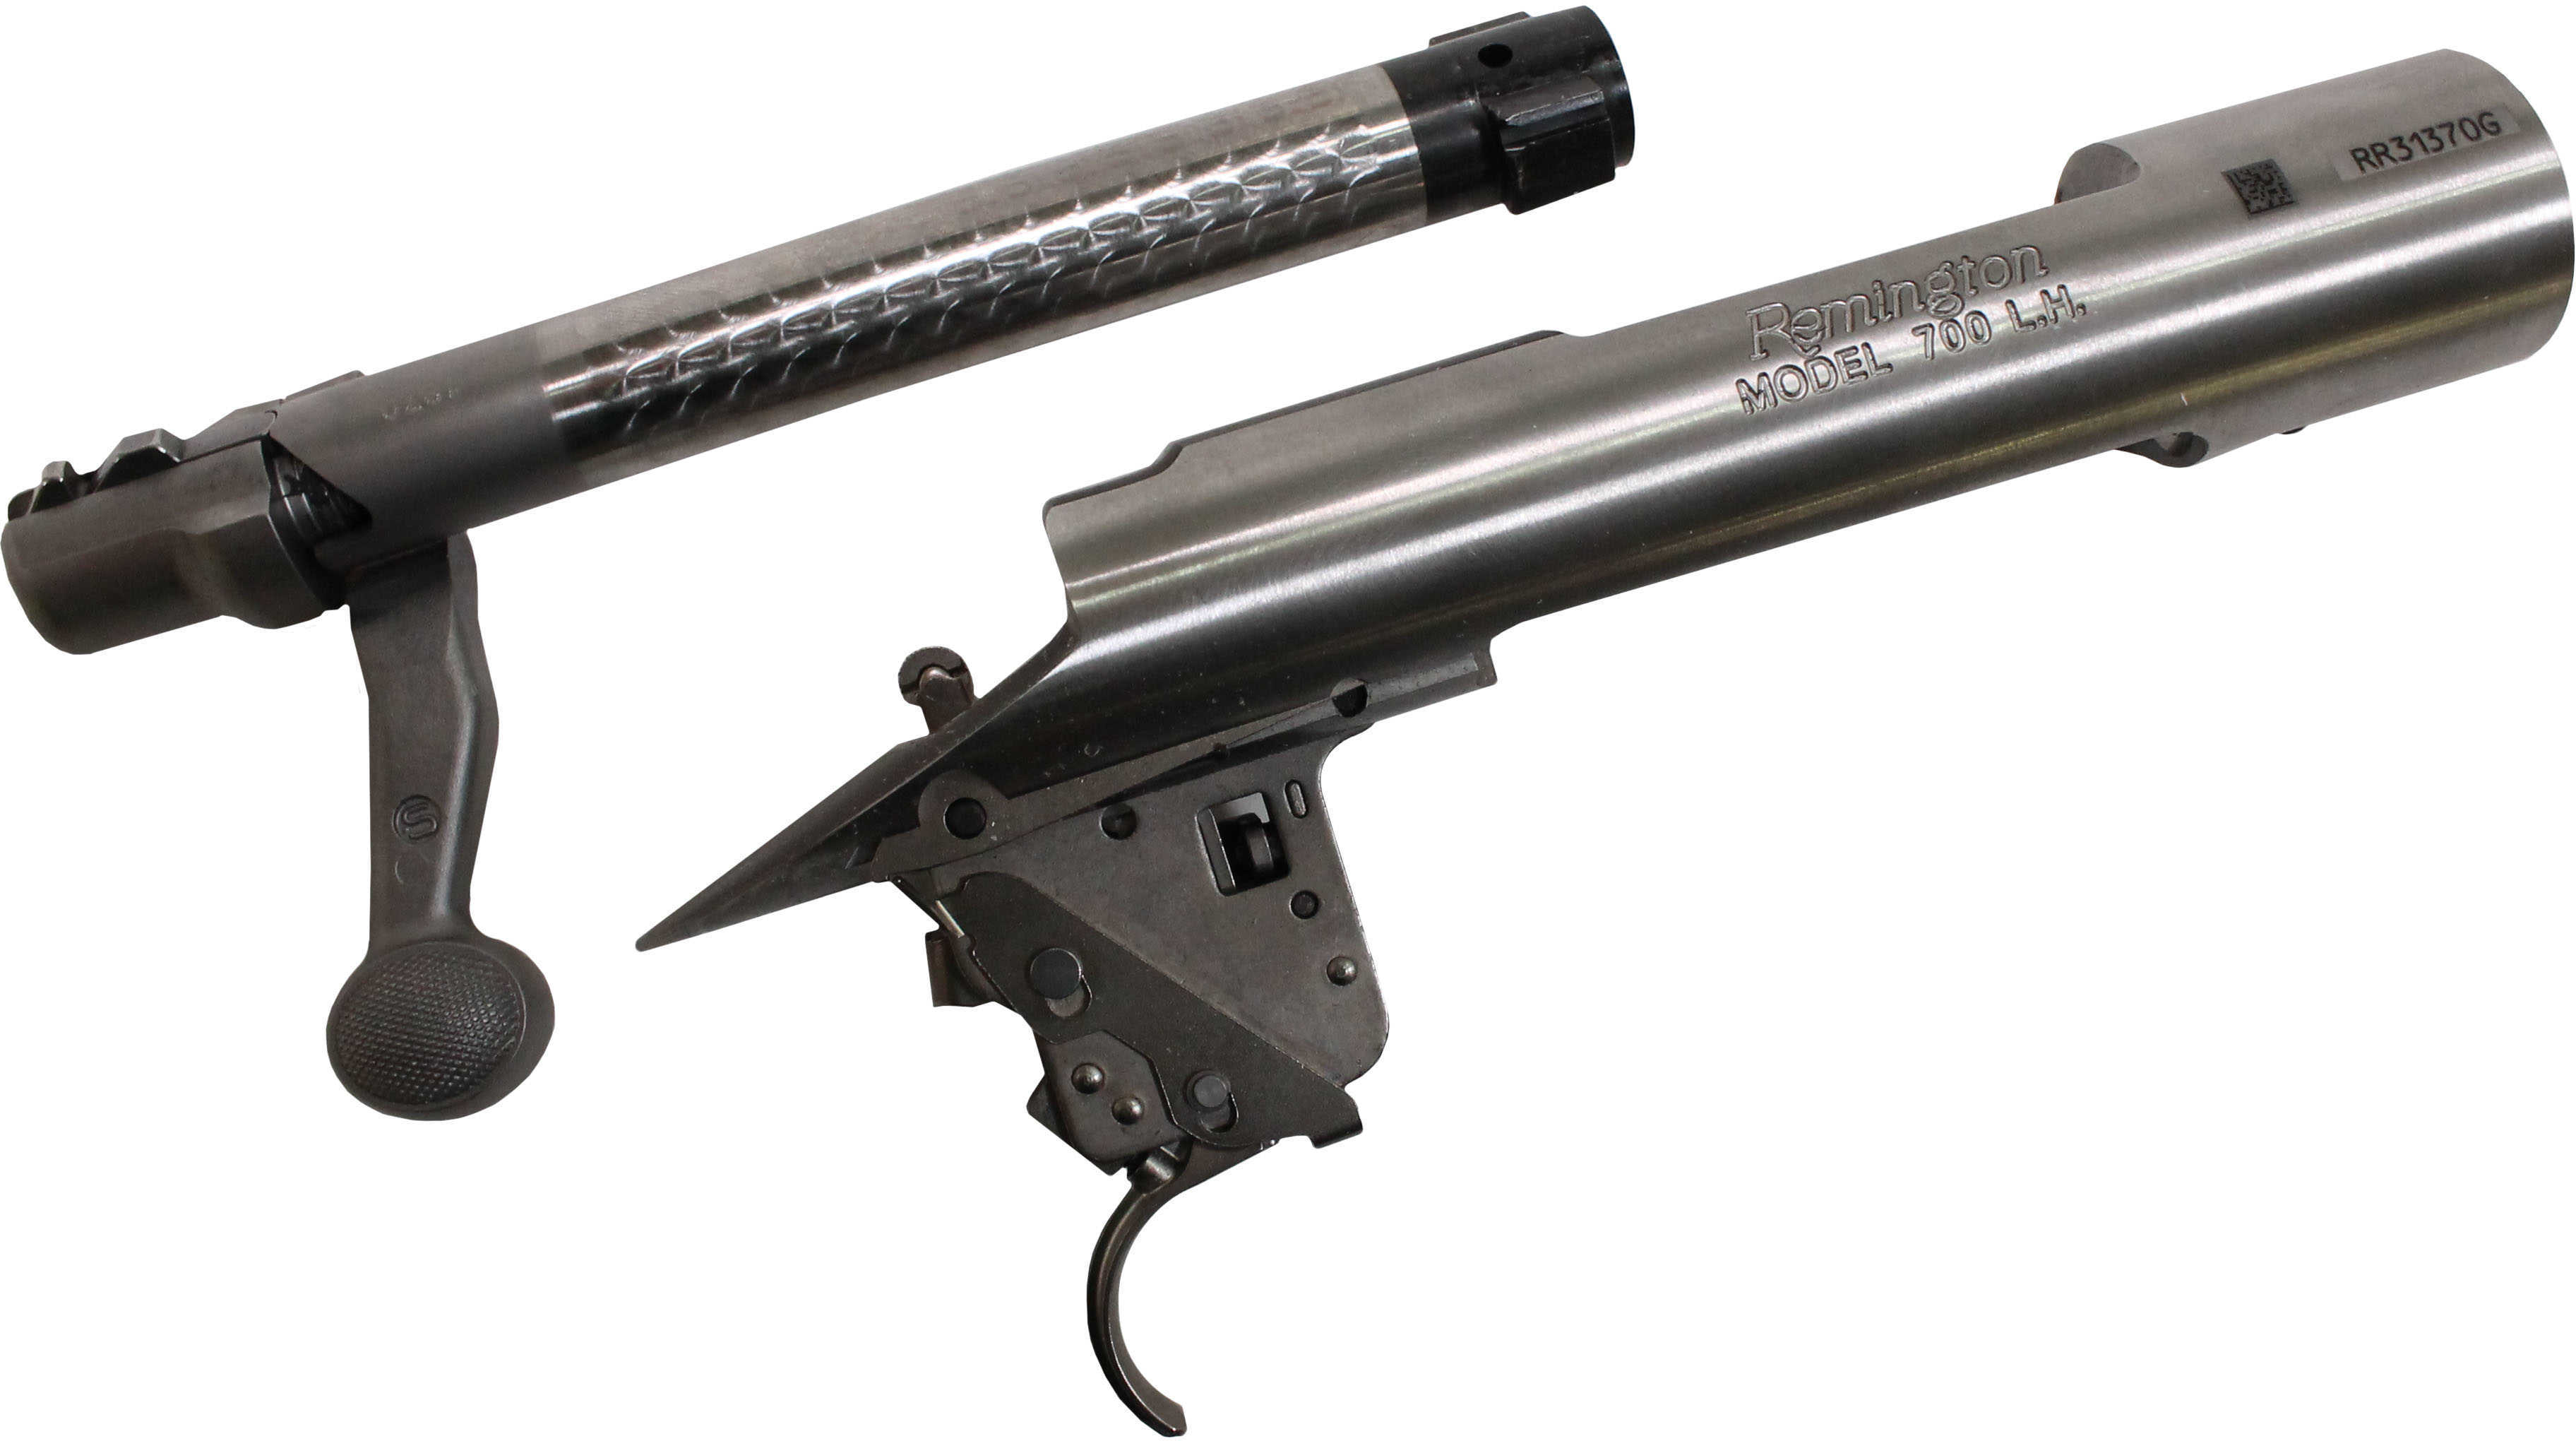 Lower Reveiver Remington 700 LH Short Action 308 Bolt Face Stainless Steel